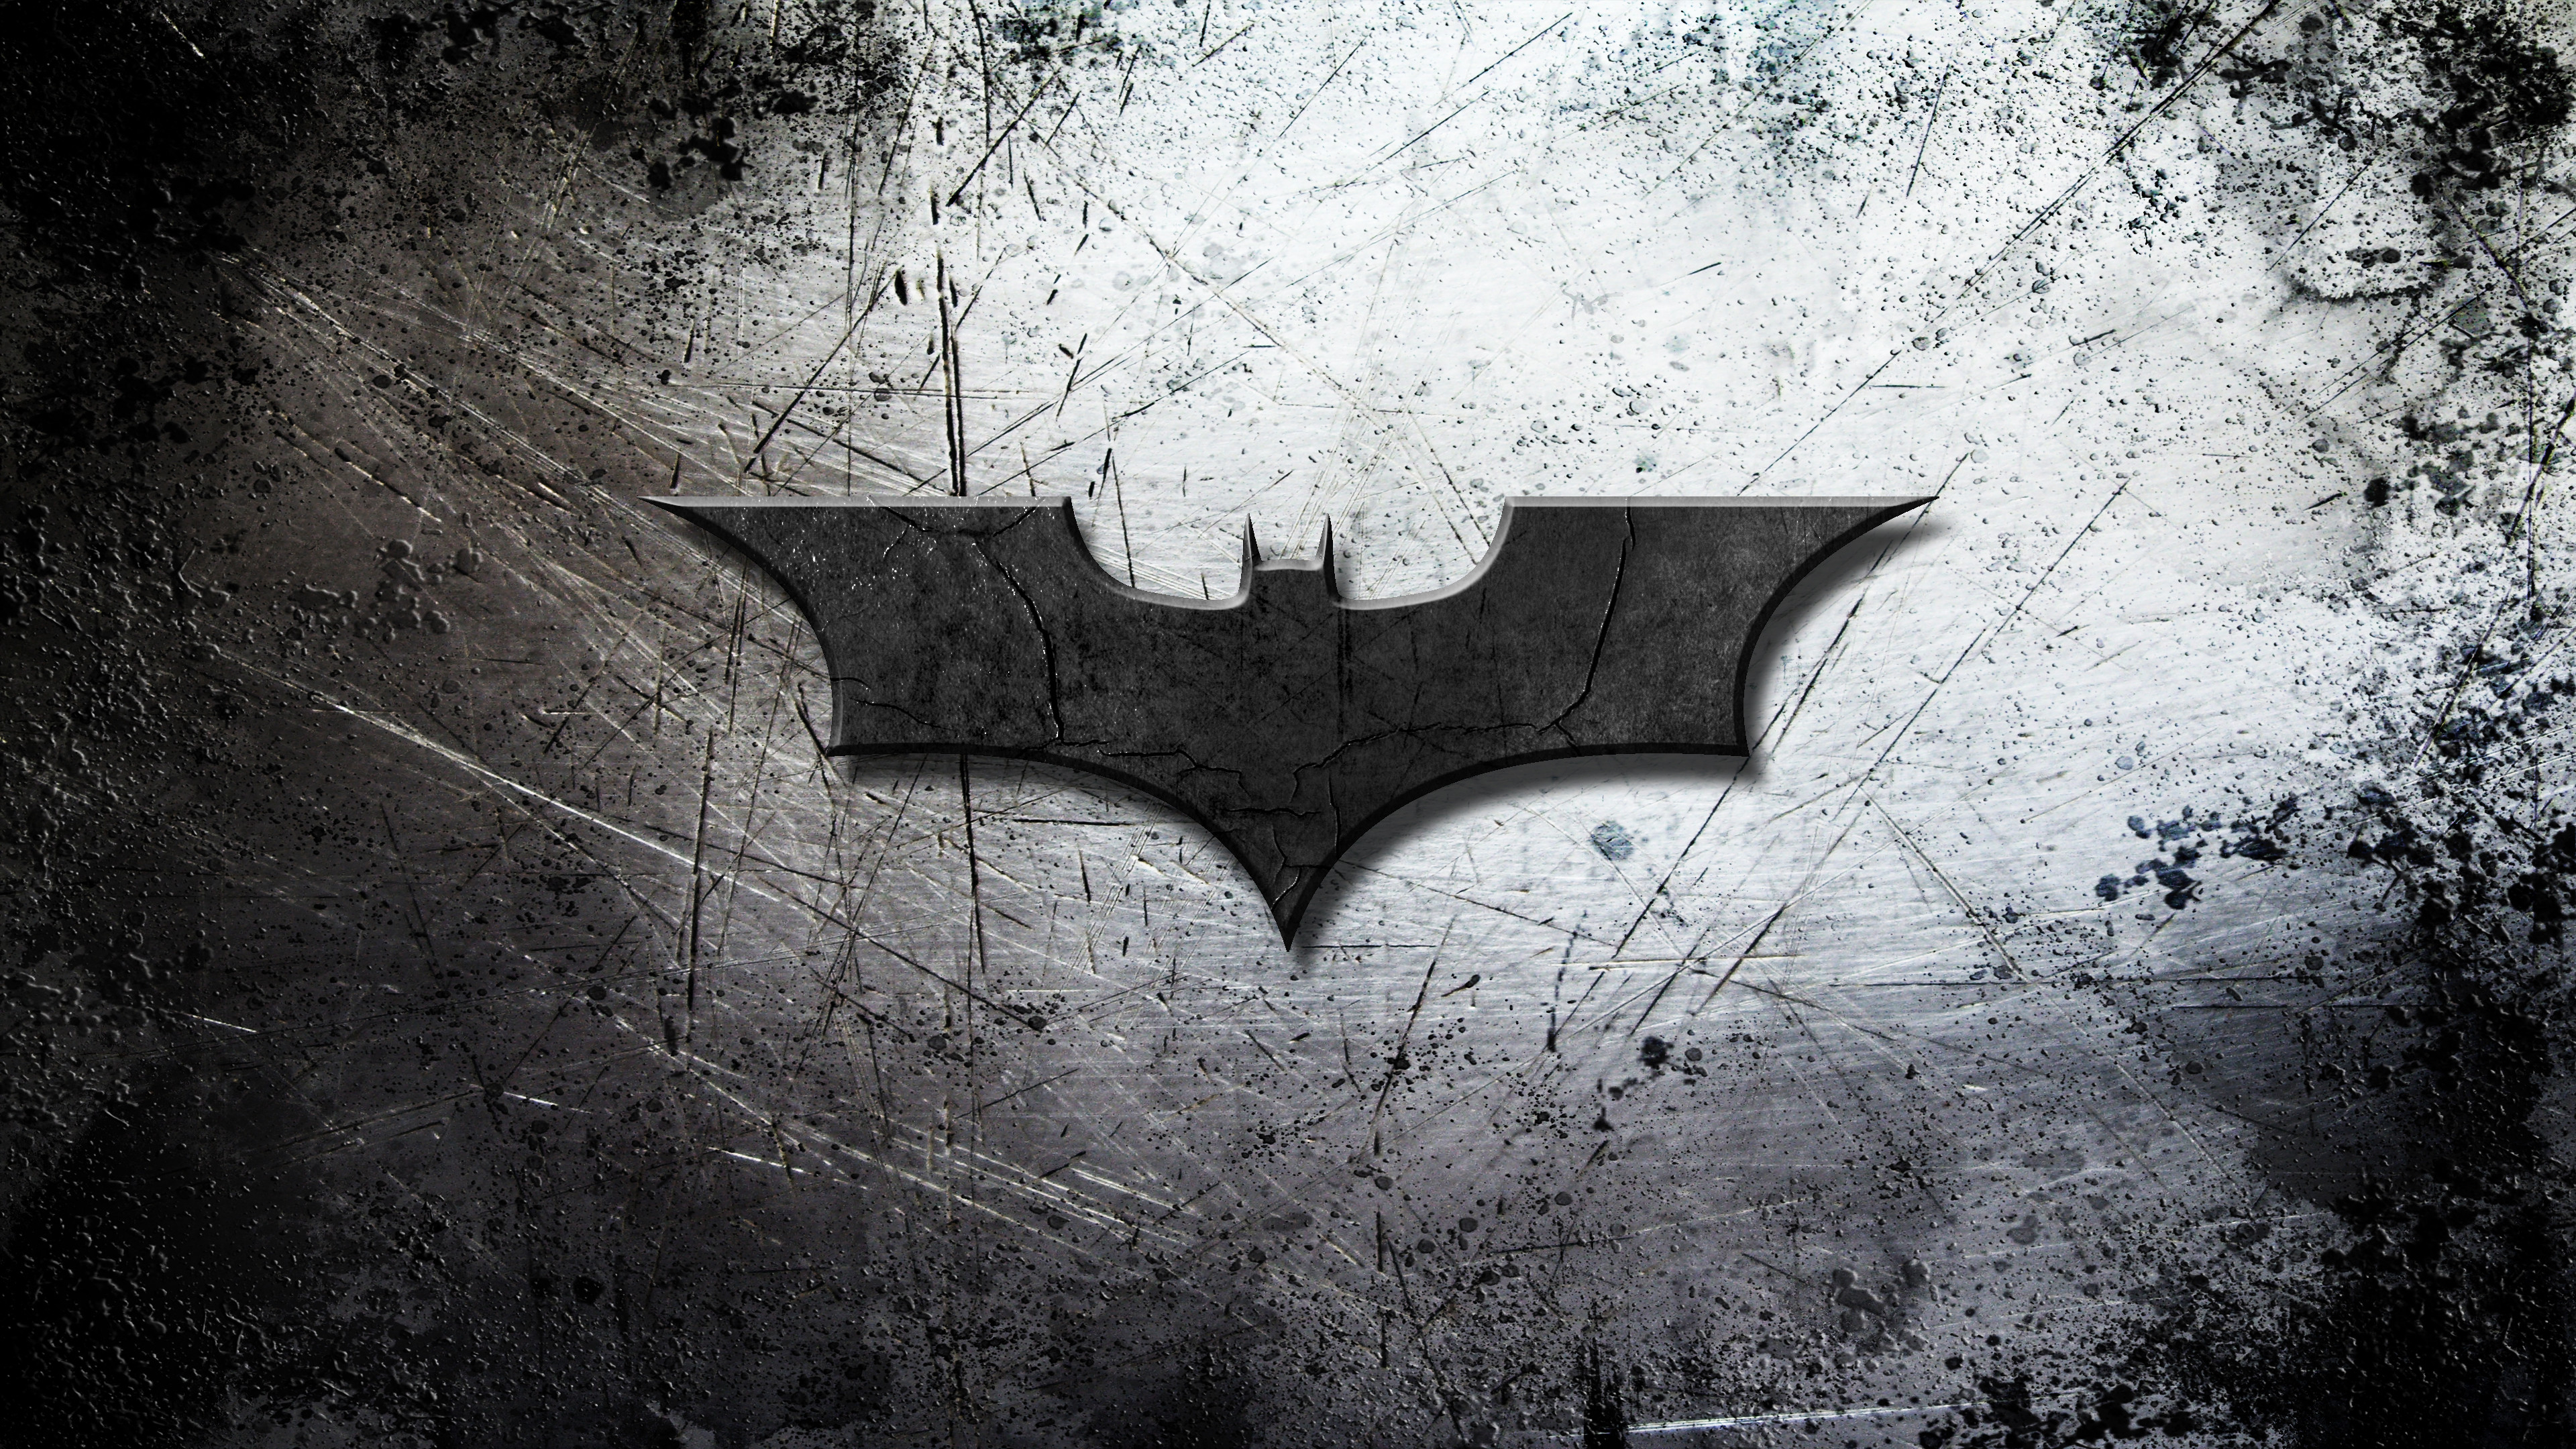 Dark Knight Logo Wallpapers